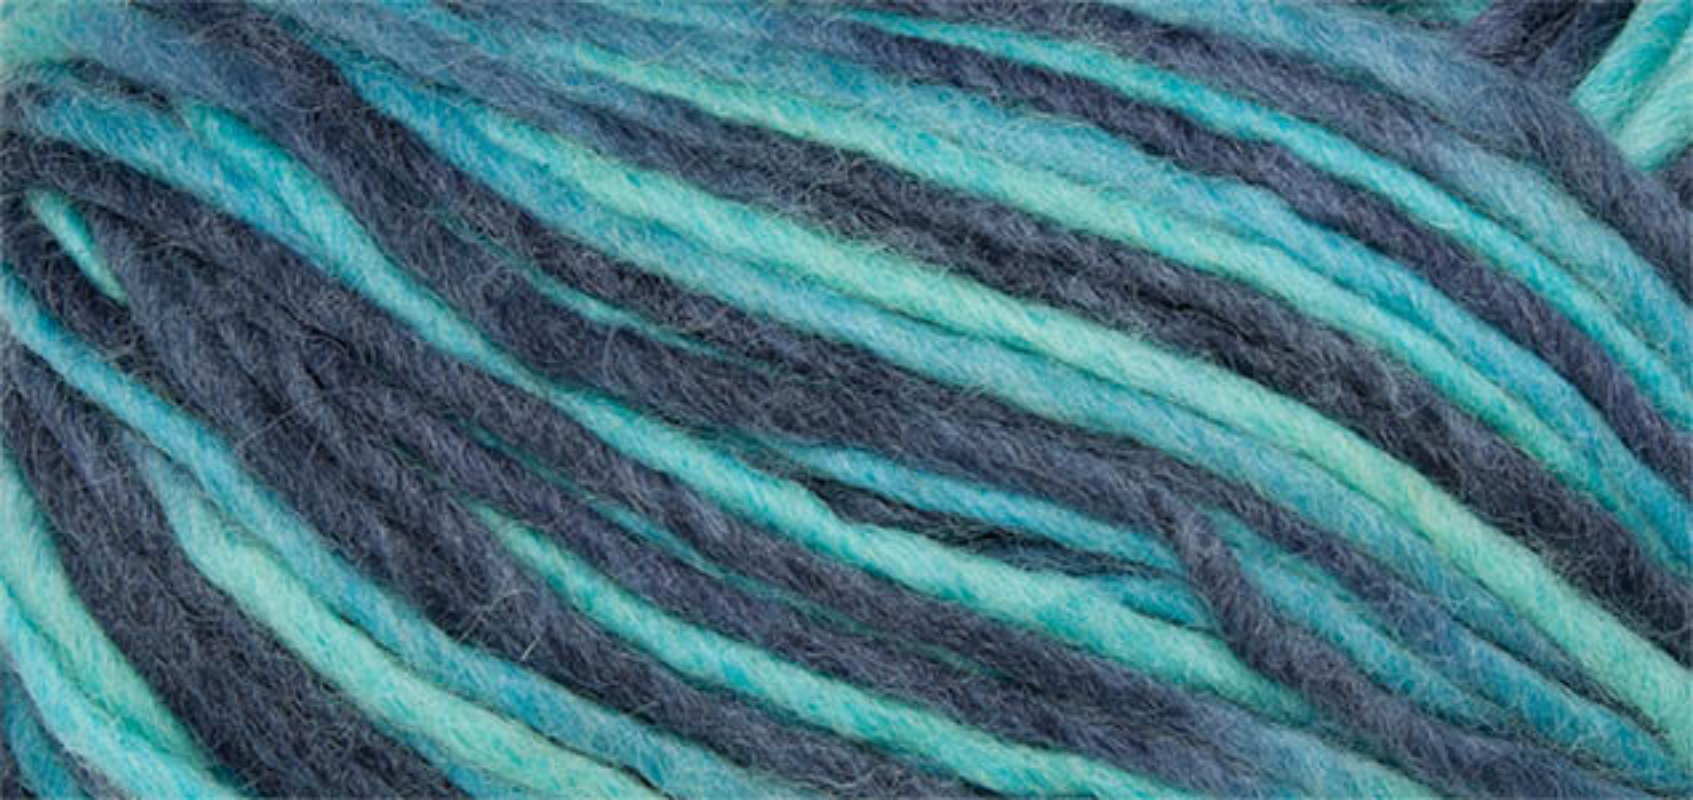 Filz Wolle Color Linie 231 von ONline 0116 - blau/türkis